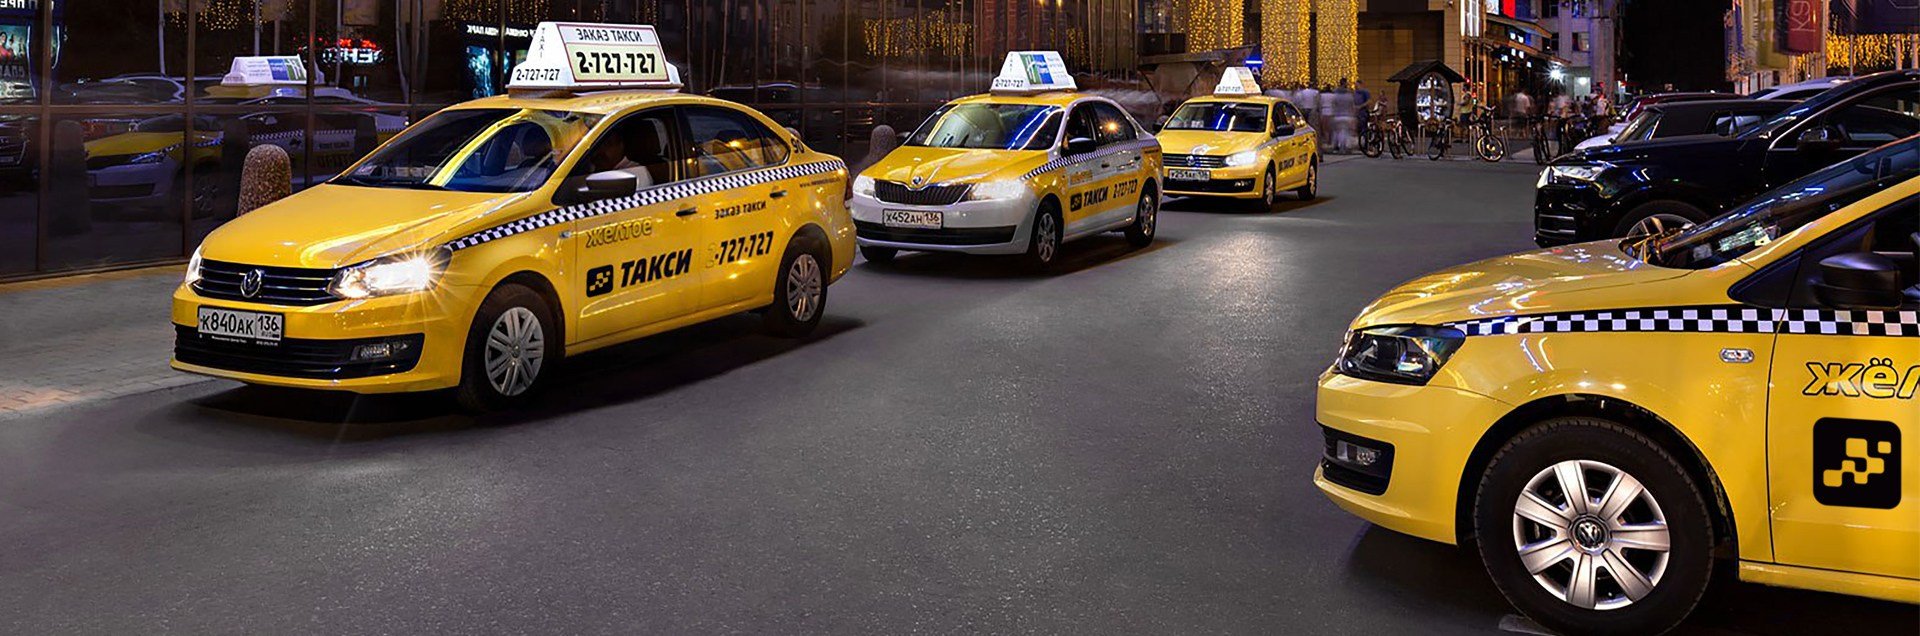 Закон о такси 2019 Чего ждать на что надеяться